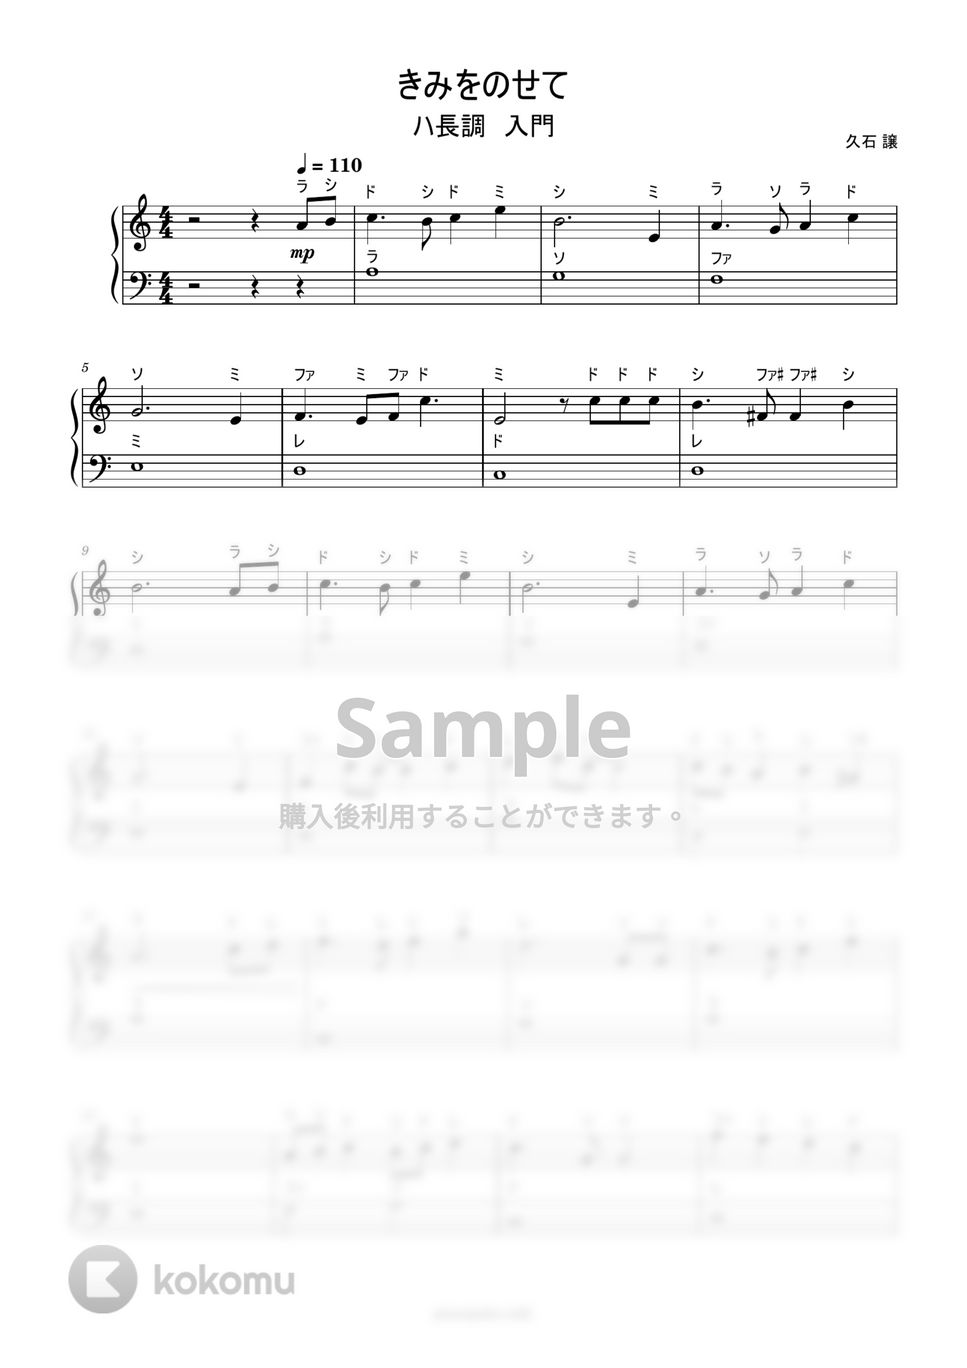 久石譲 - 君をのせて (ハ長調ドレミ付き簡単楽譜) by ピアノ塾